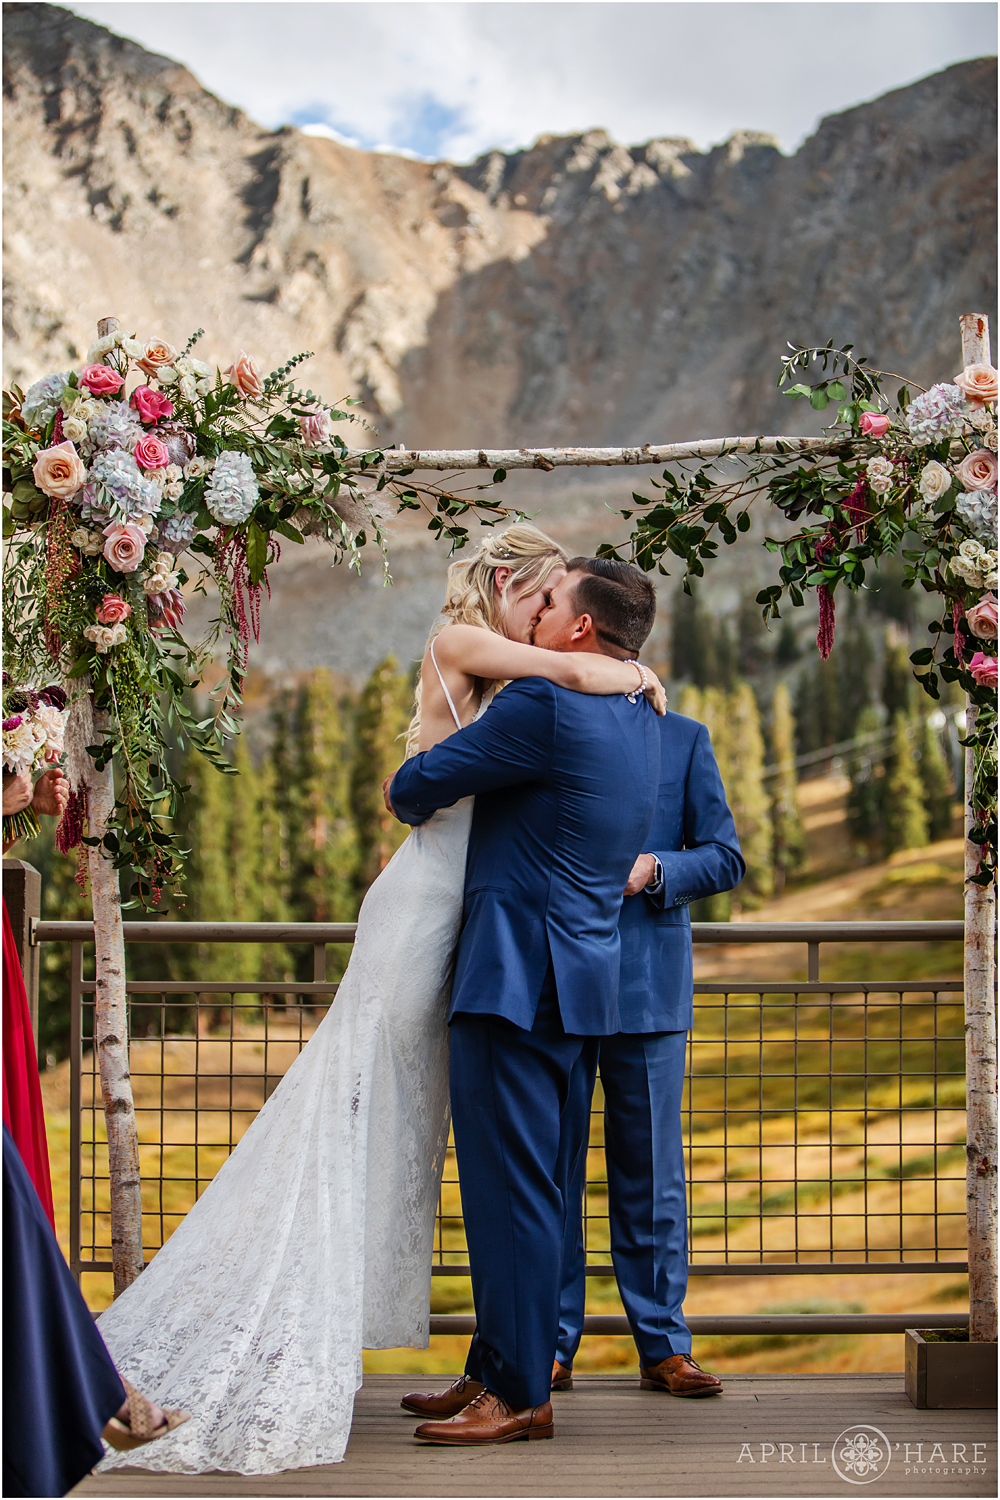 Romantic Destination Wedding Photoraphy in Colorado